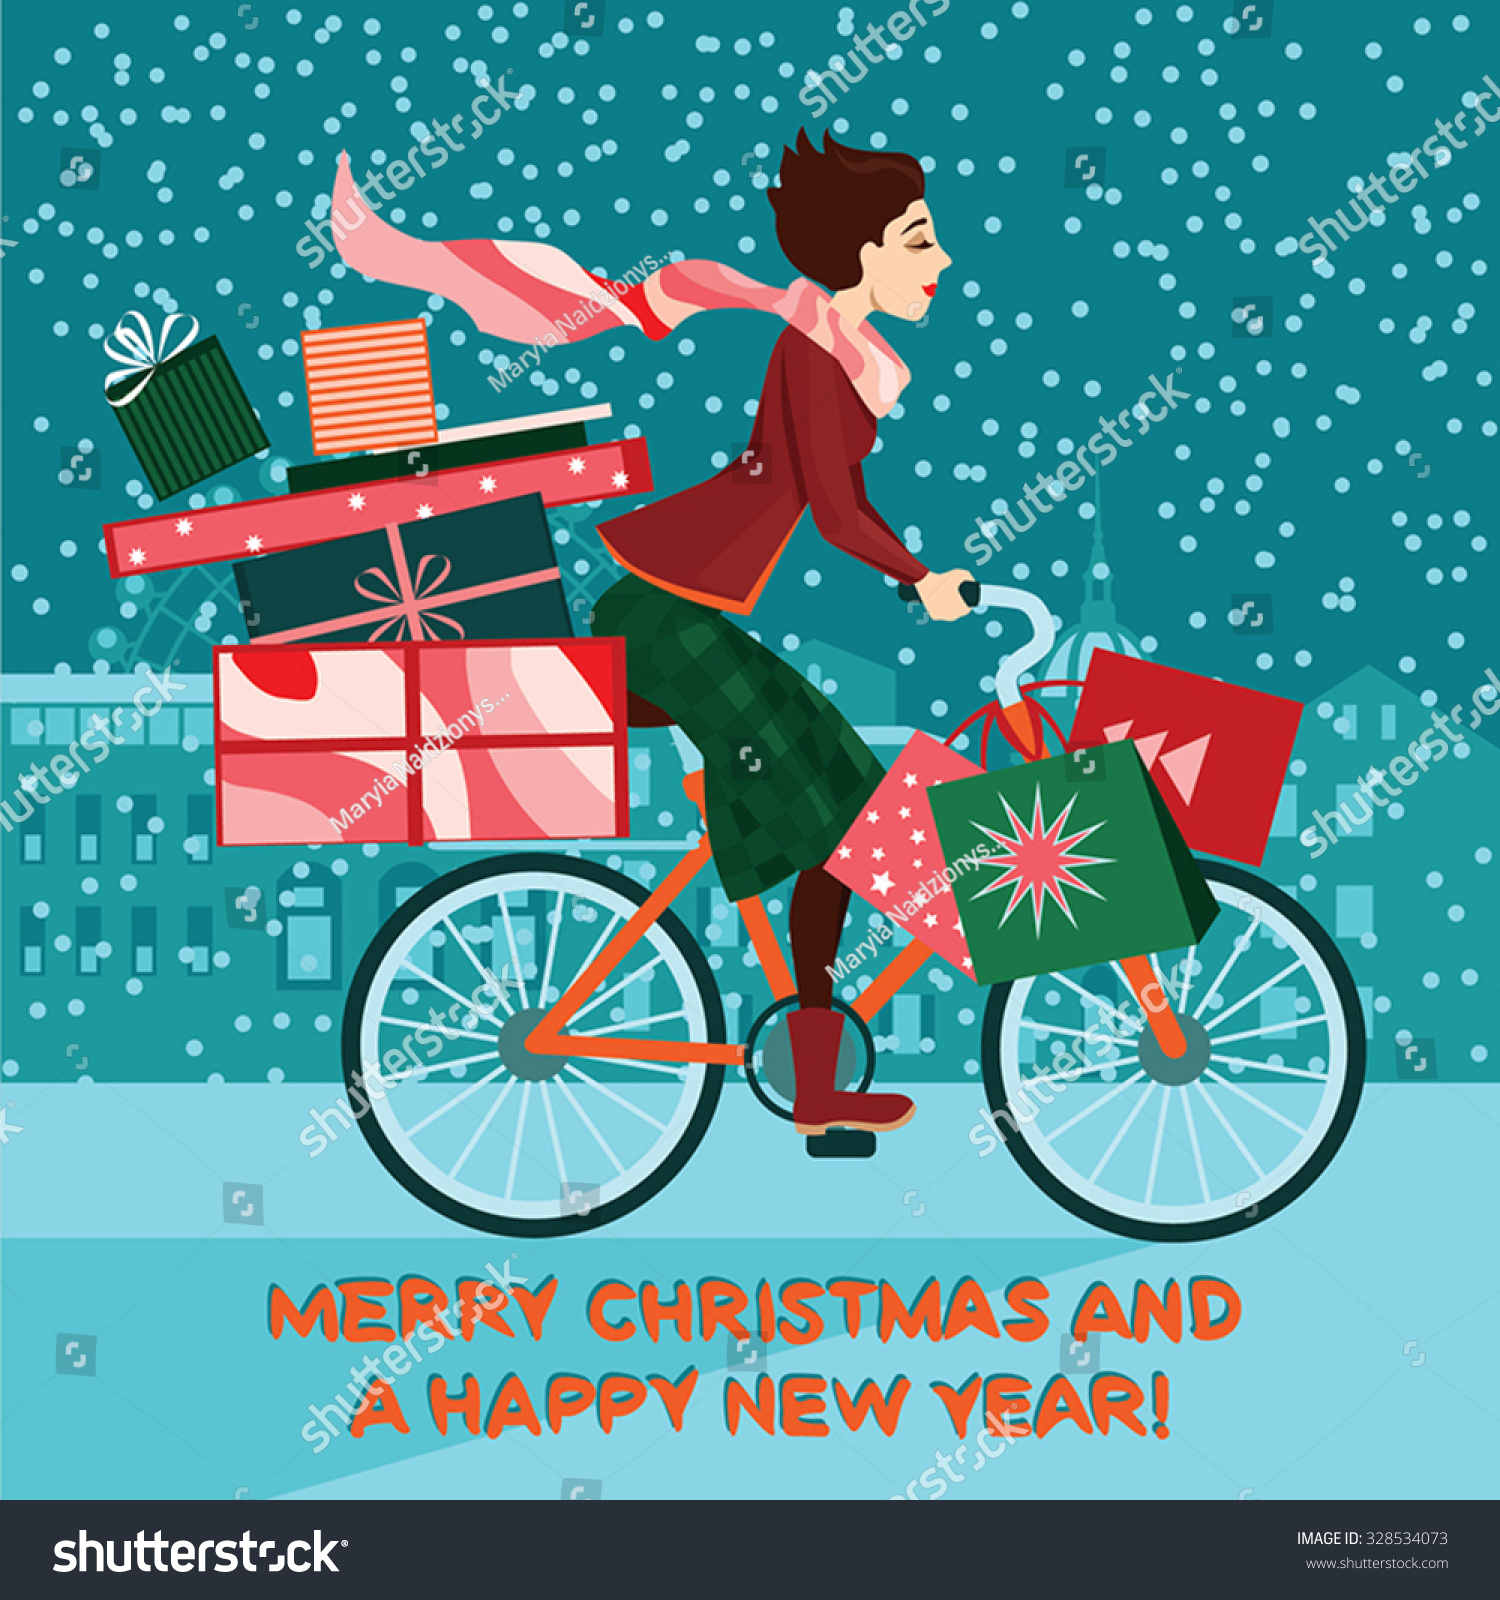 Girl on bike with ts Christmas sale